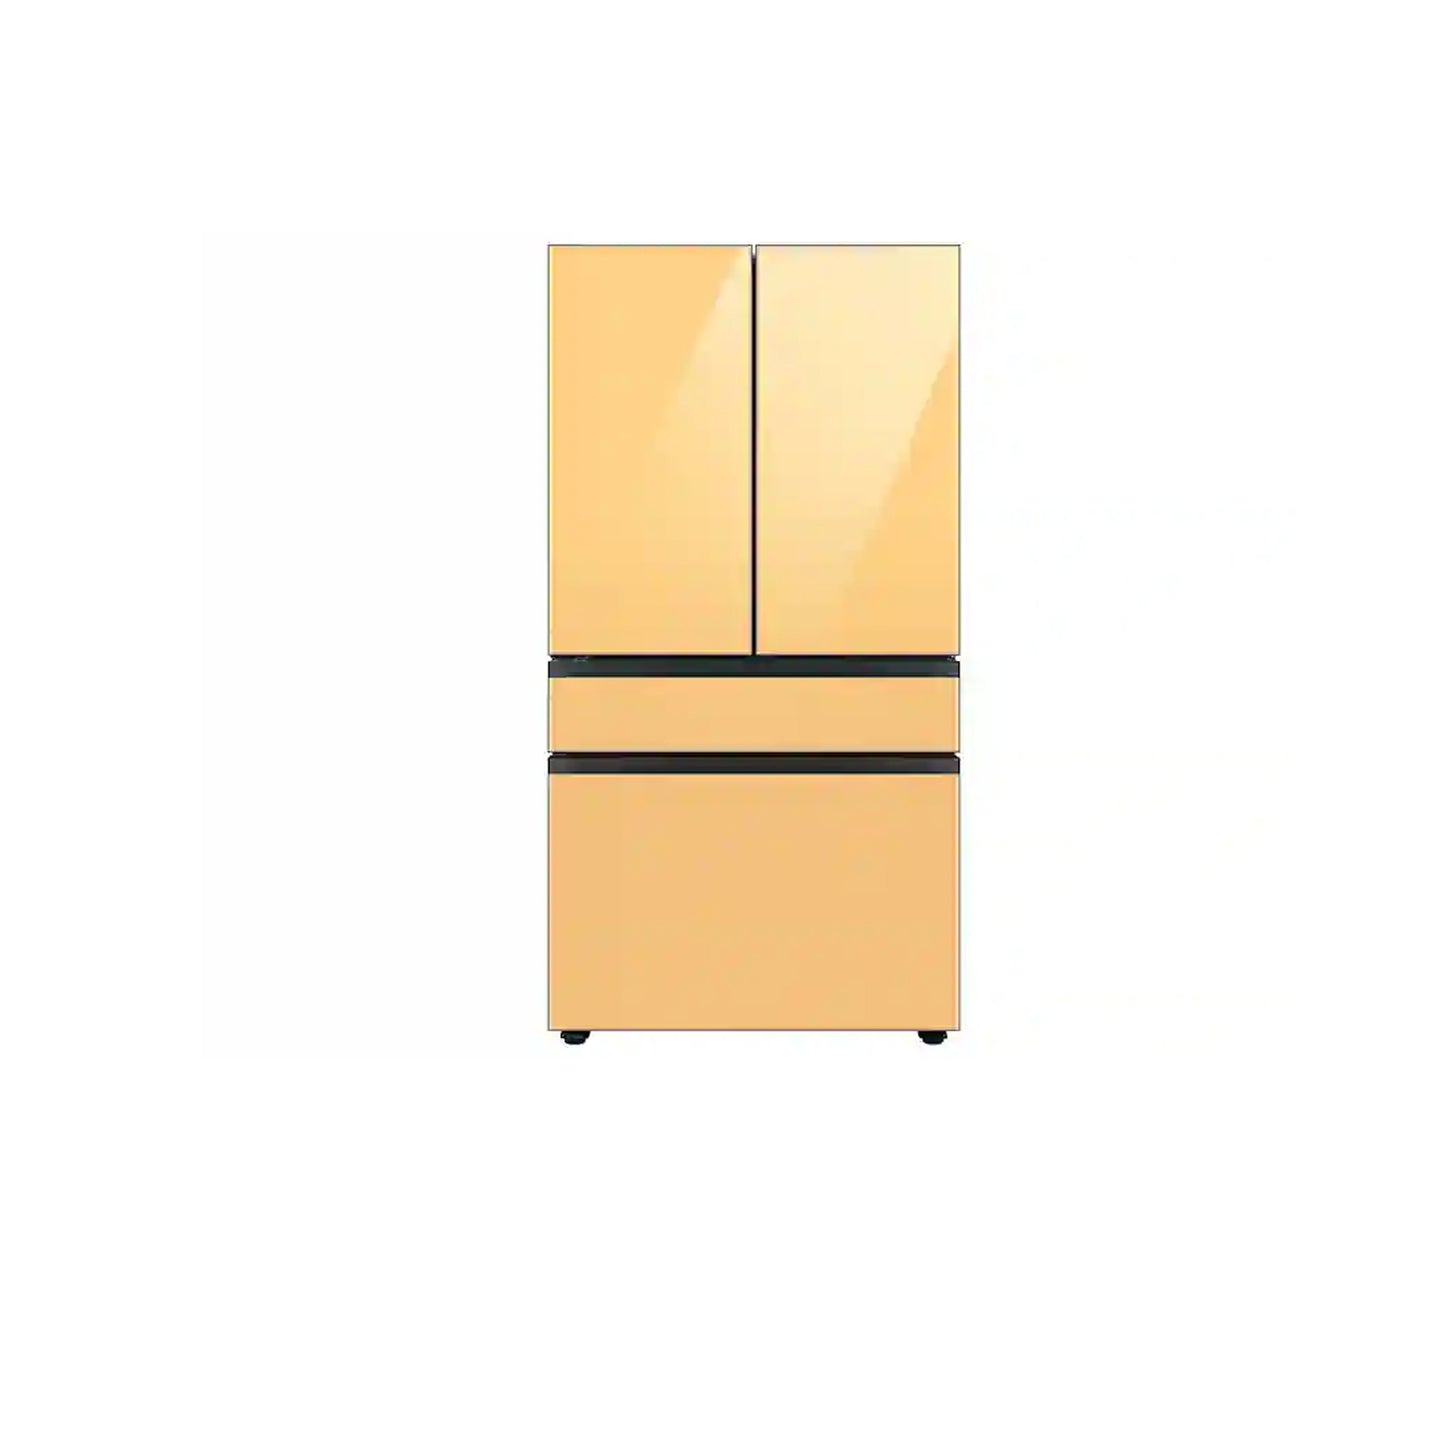 ثلاجة مخصصة بباب فرنسي بأربعة أبواب (23 قدمًا مكعبًا) مع ألوان لوحة الباب قابلة للتخصيص ومركز المشروبات™ بزجاج فحمي